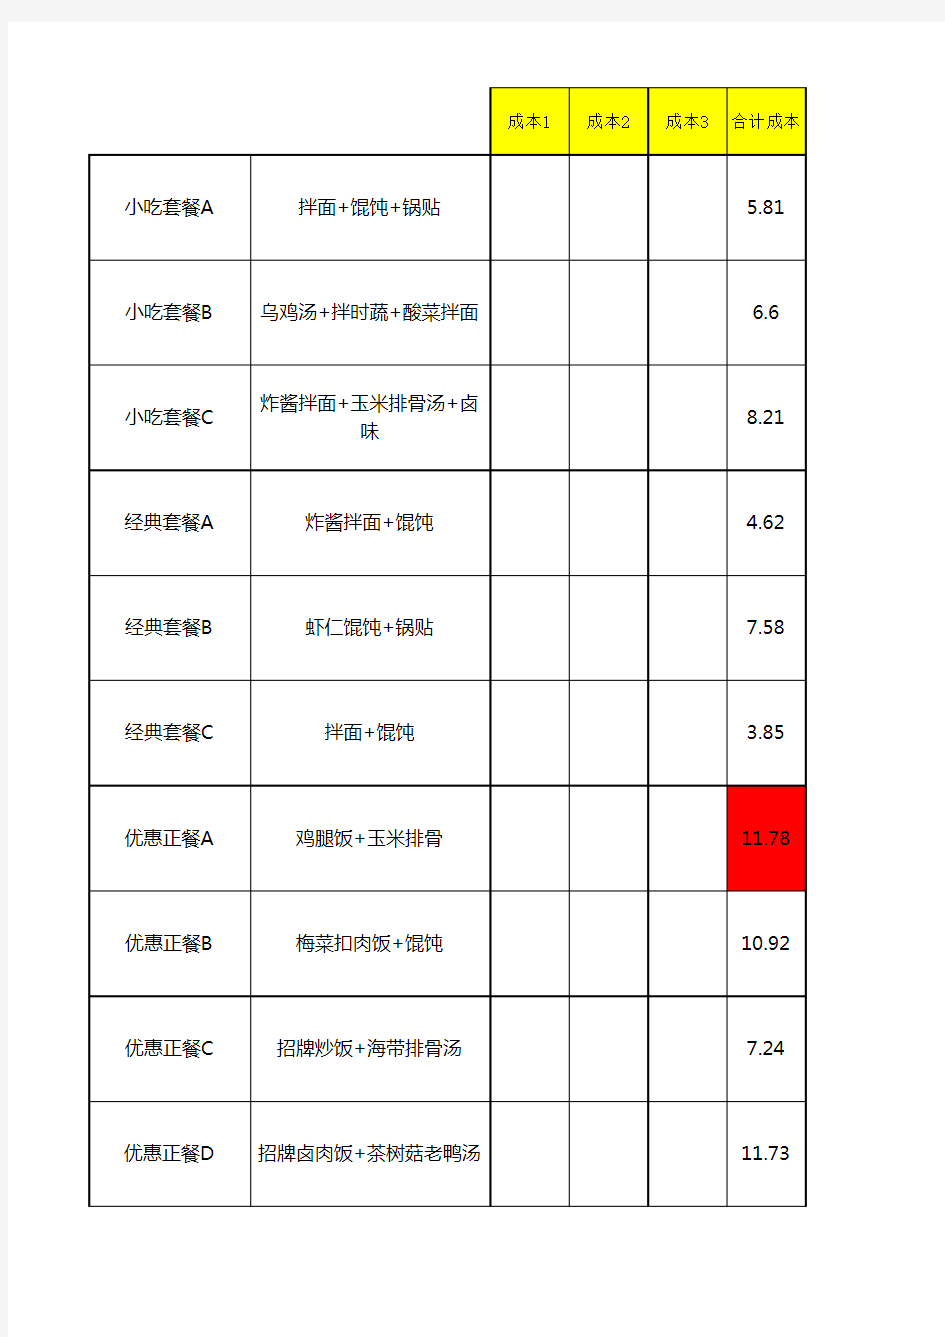 1_1_沙县小吃菜单成本核算表2019.10.17(2)